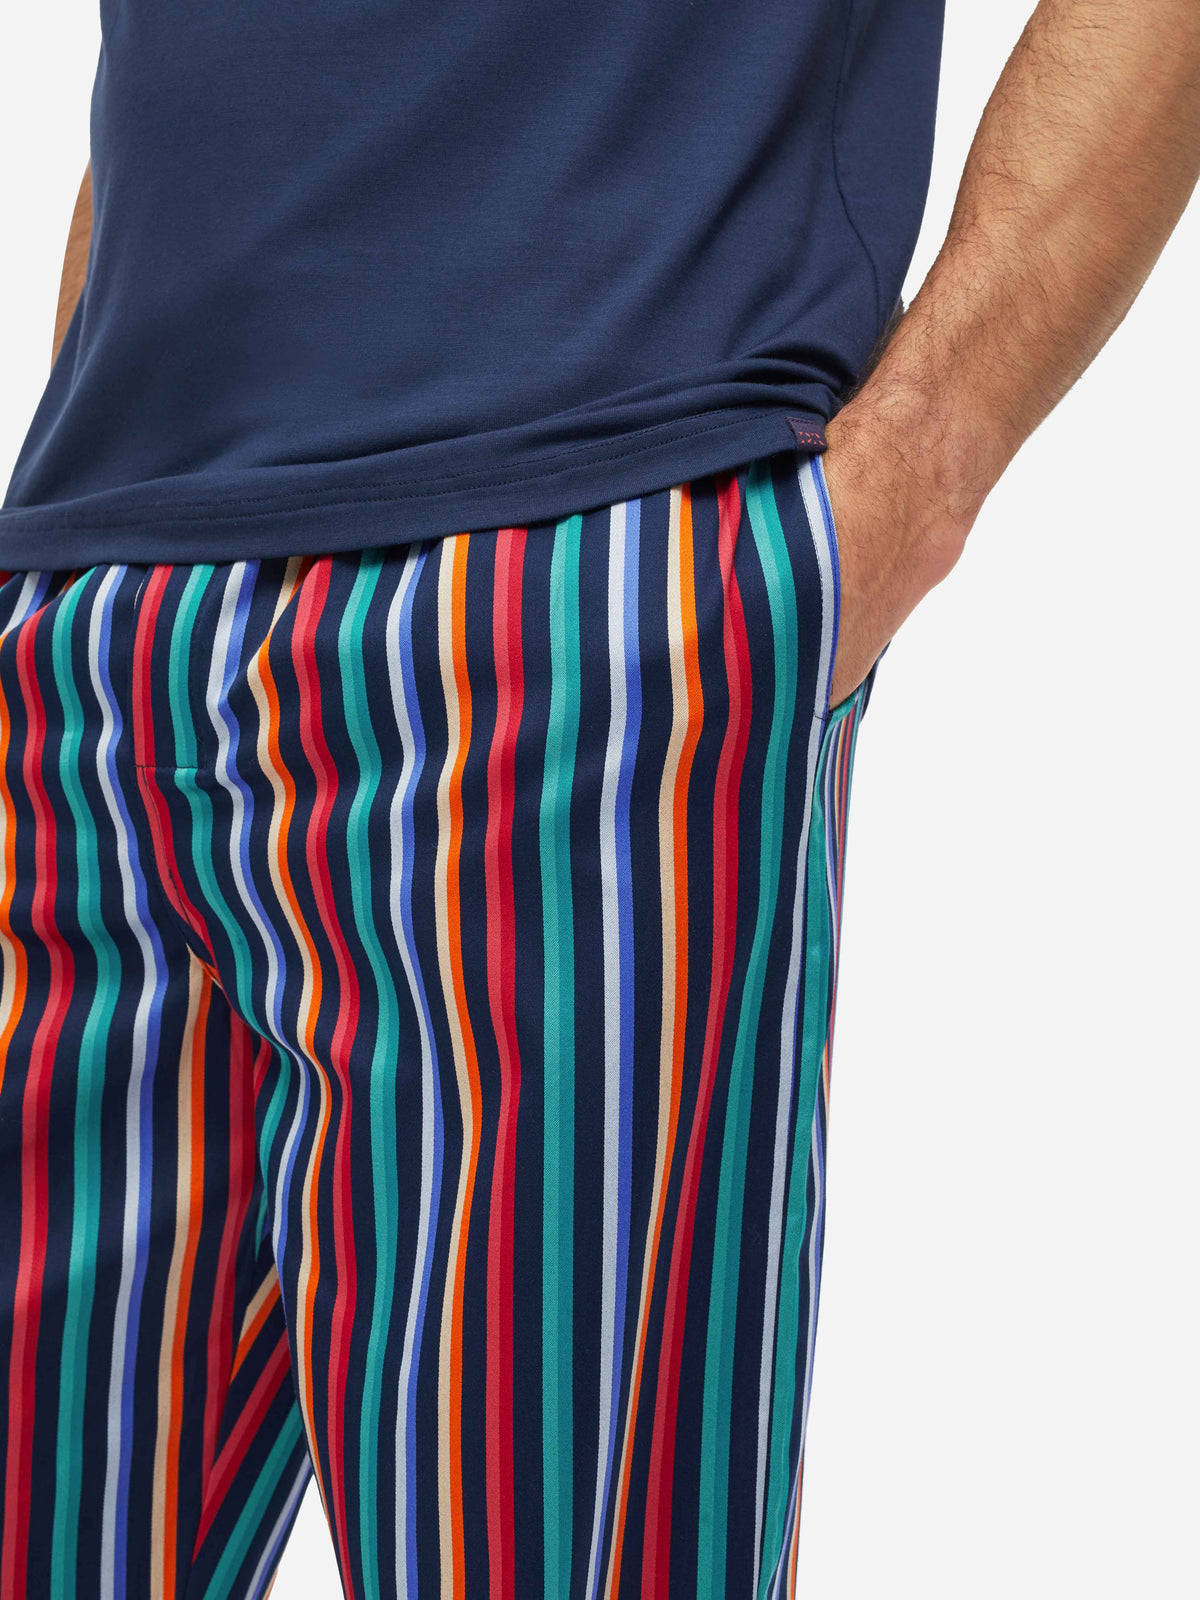 Men's Lounge Trousers Wellington 54 Cotton Multi